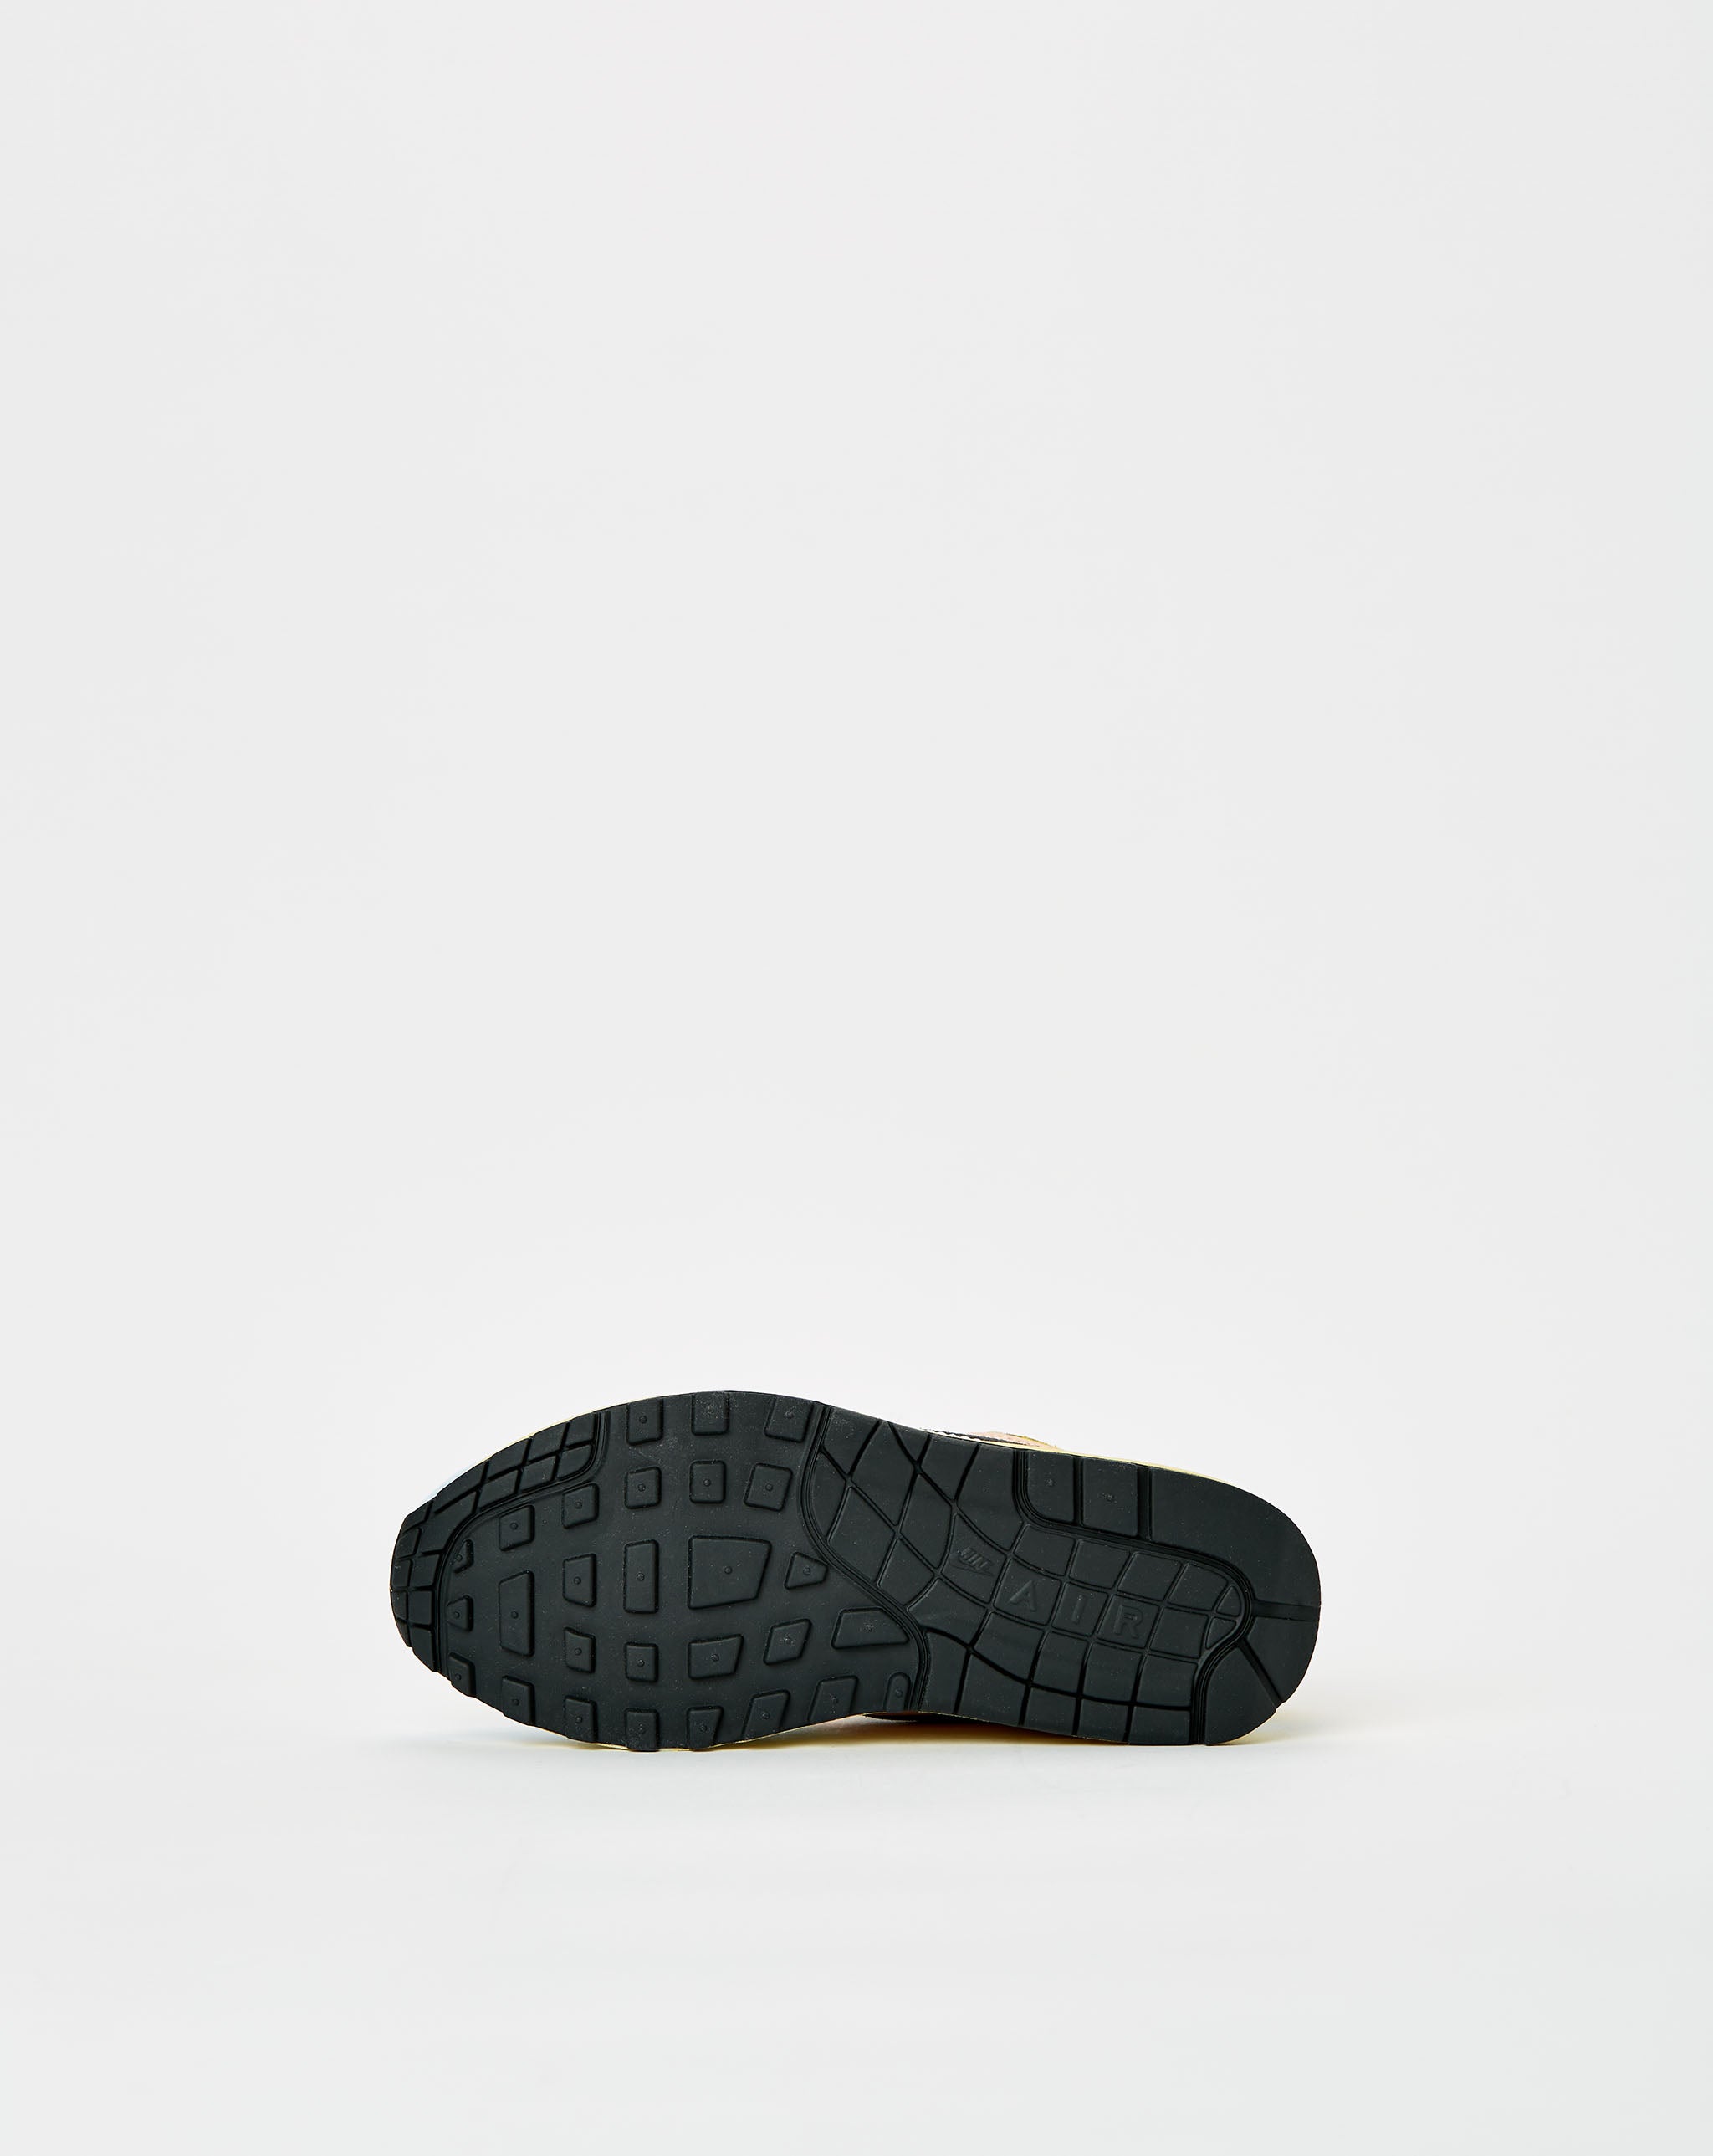 Nike nike kyrie 1 preschool size 2 year shoe  - Cheap Urlfreeze Jordan outlet